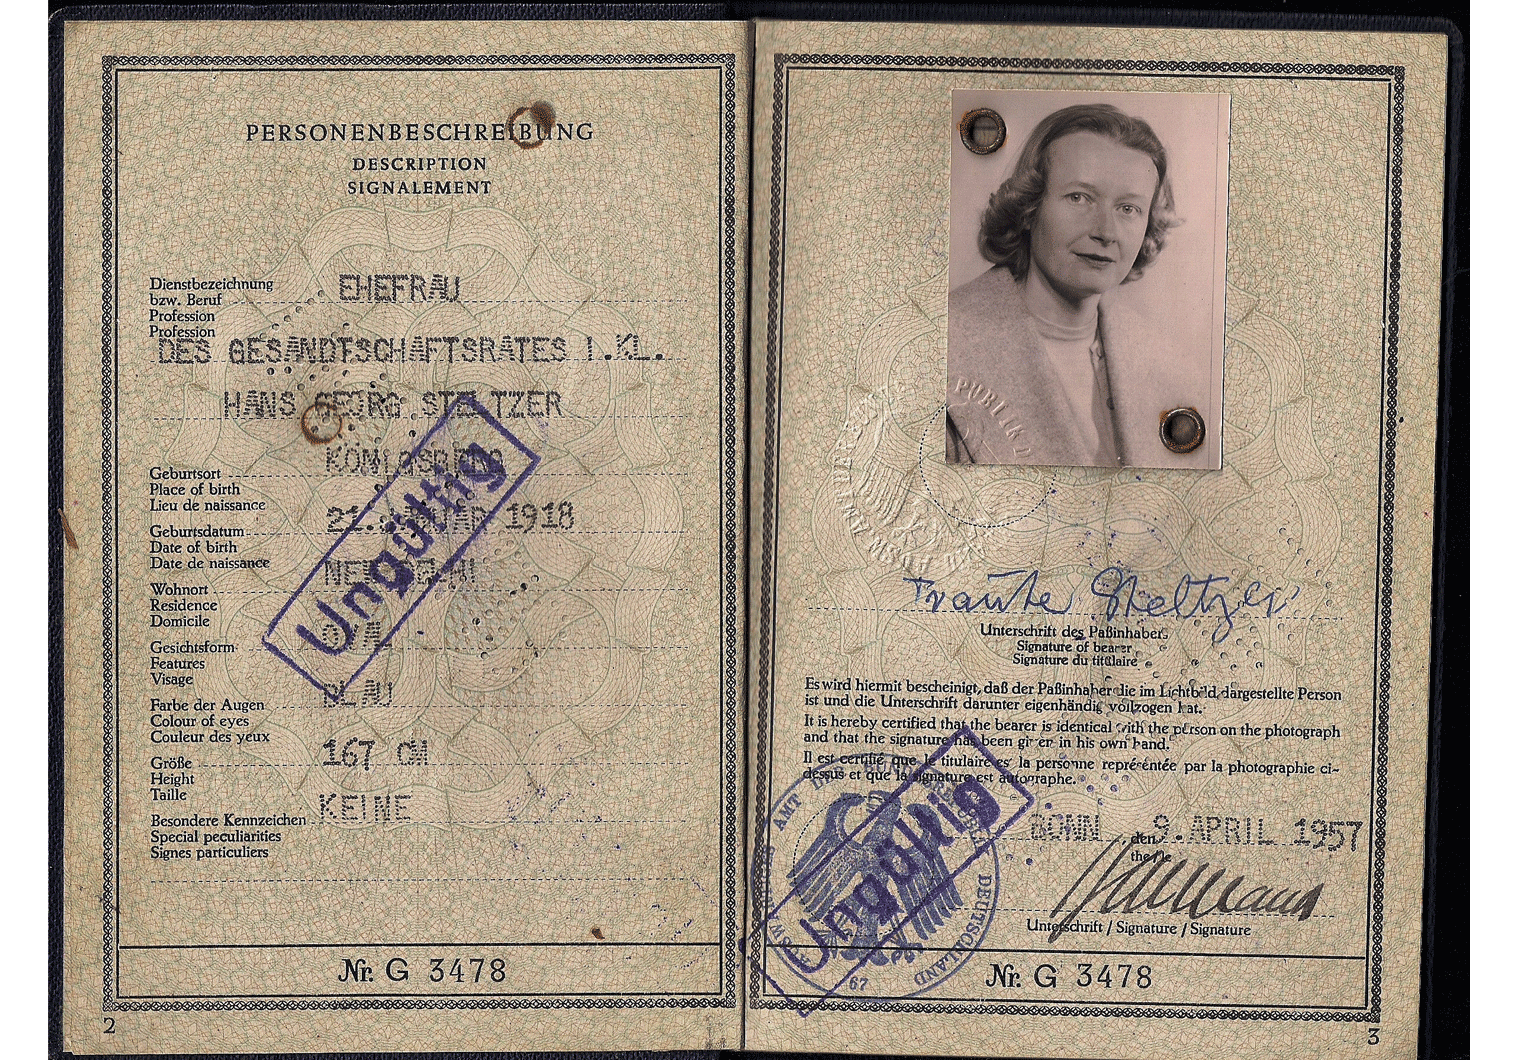 1957 German Diplomatic passport